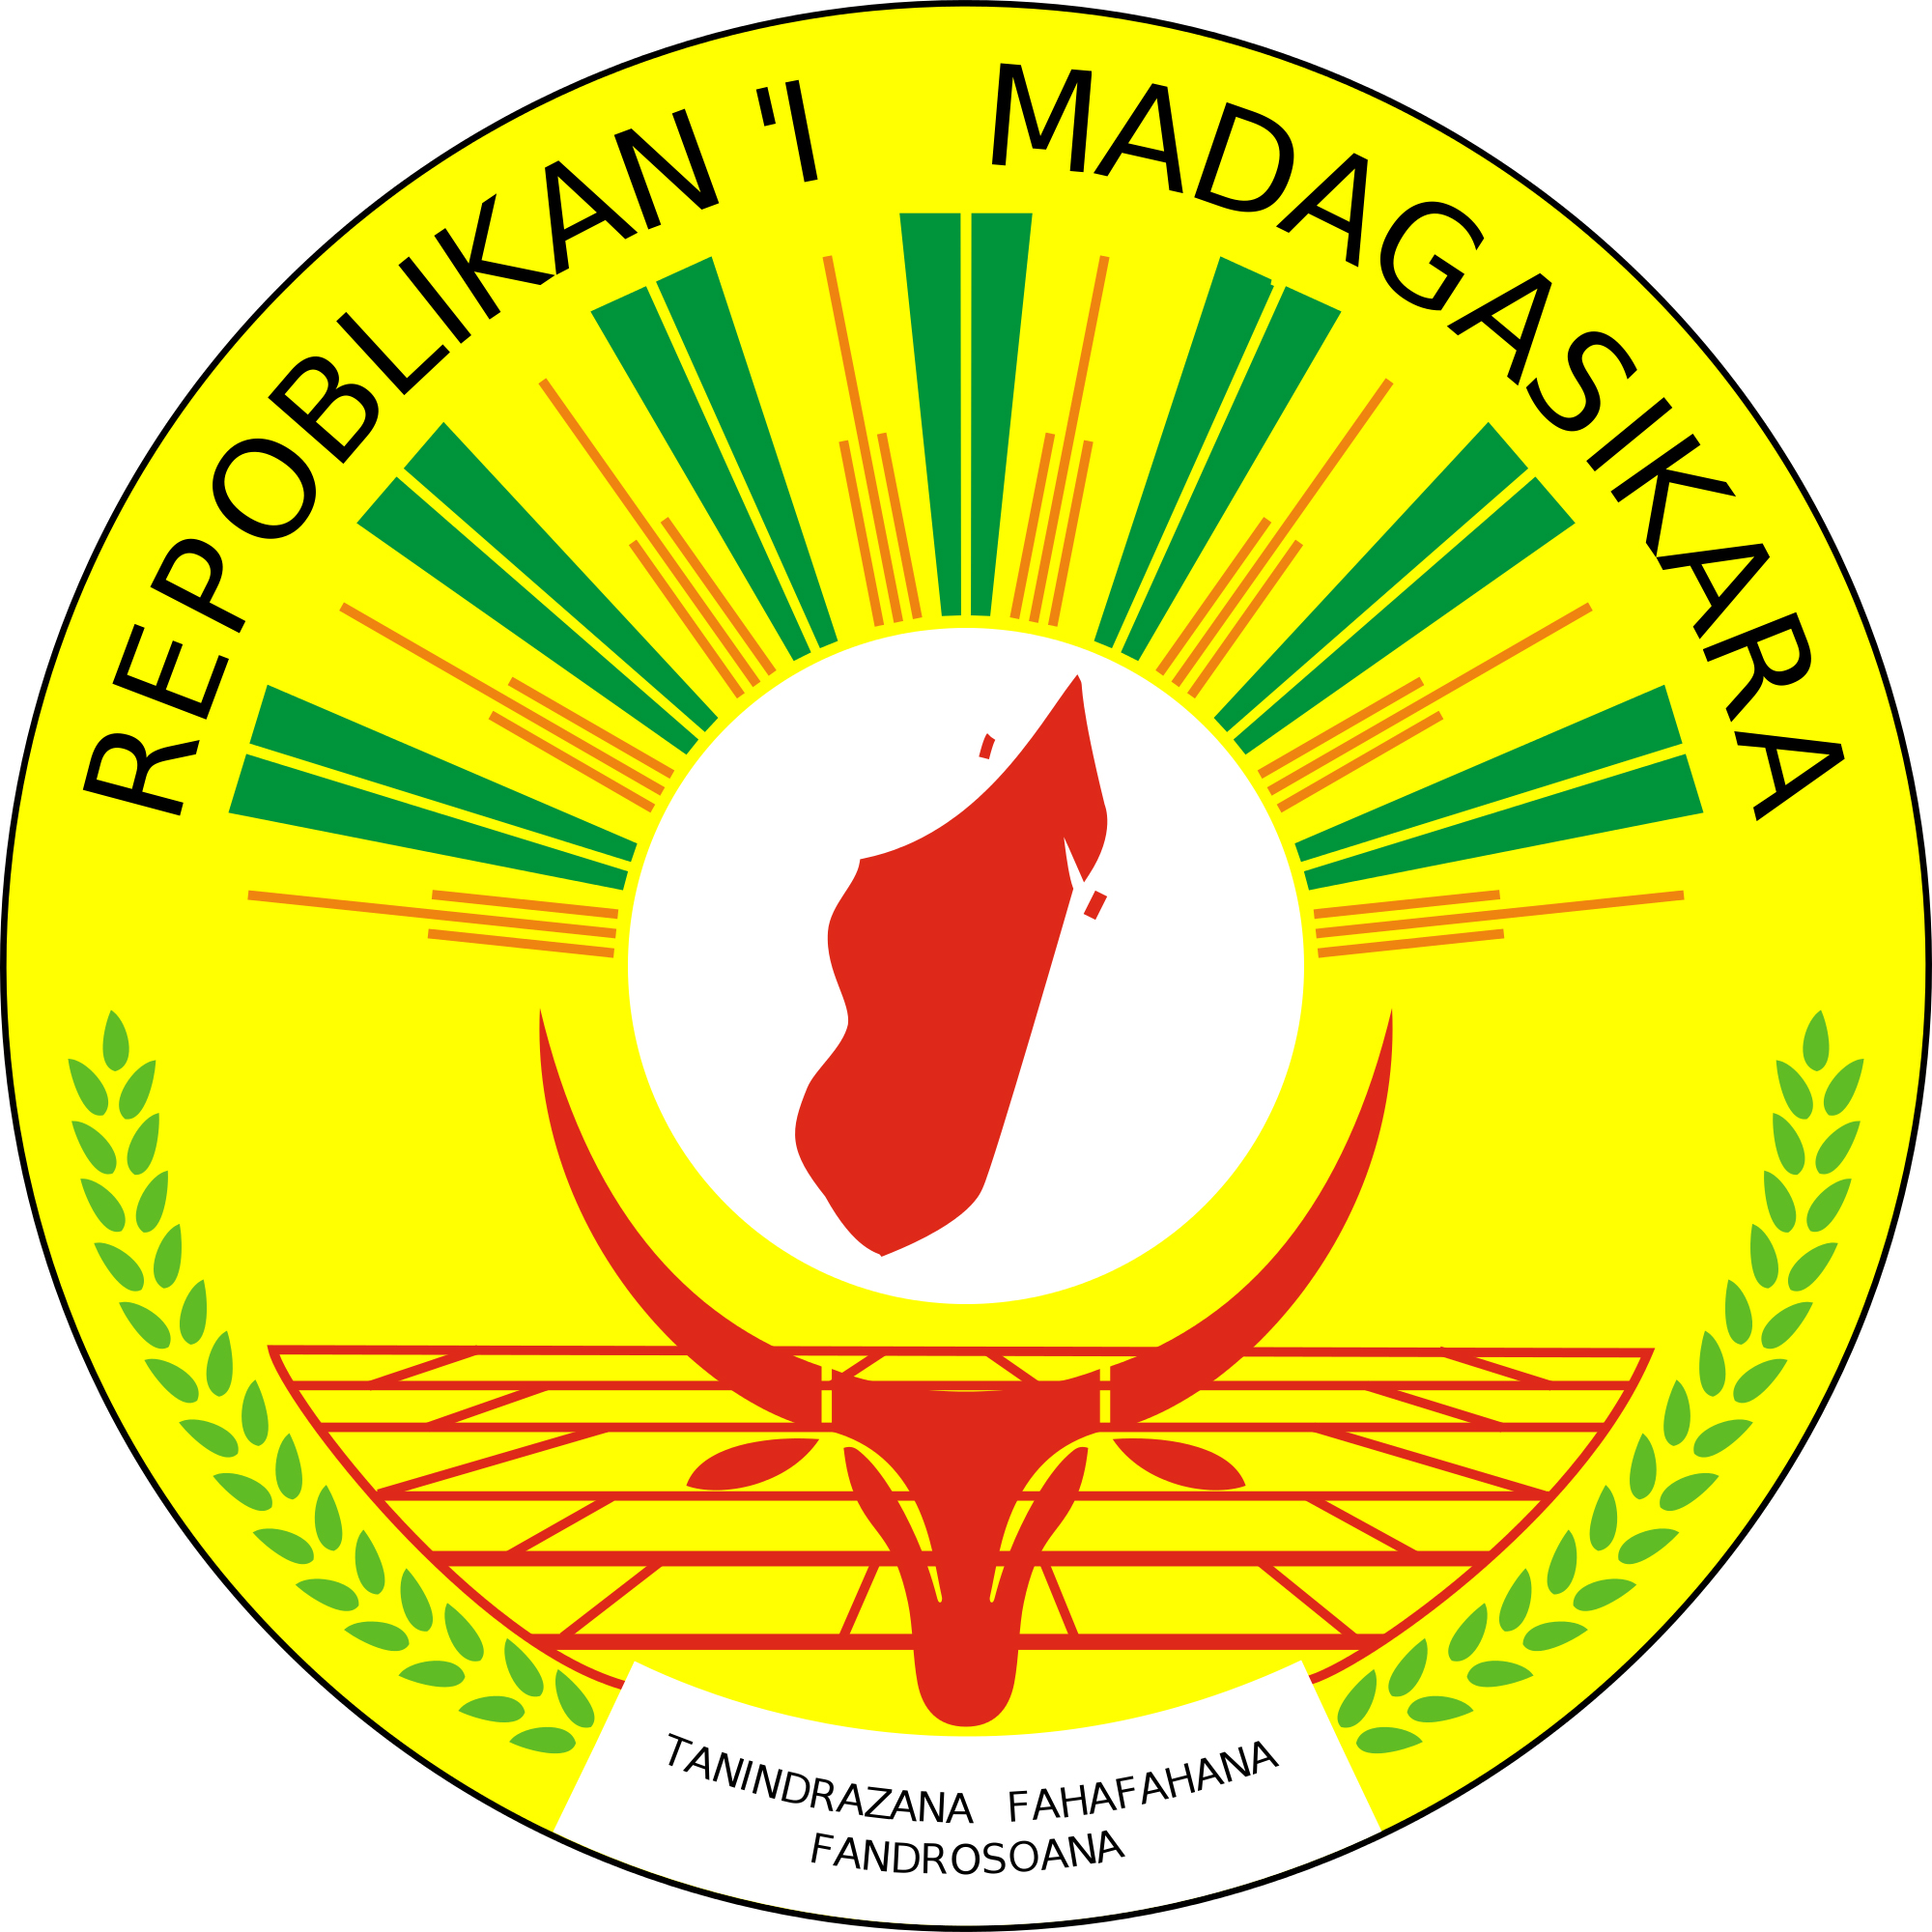 The seal of Madagascar - MadaMagazine